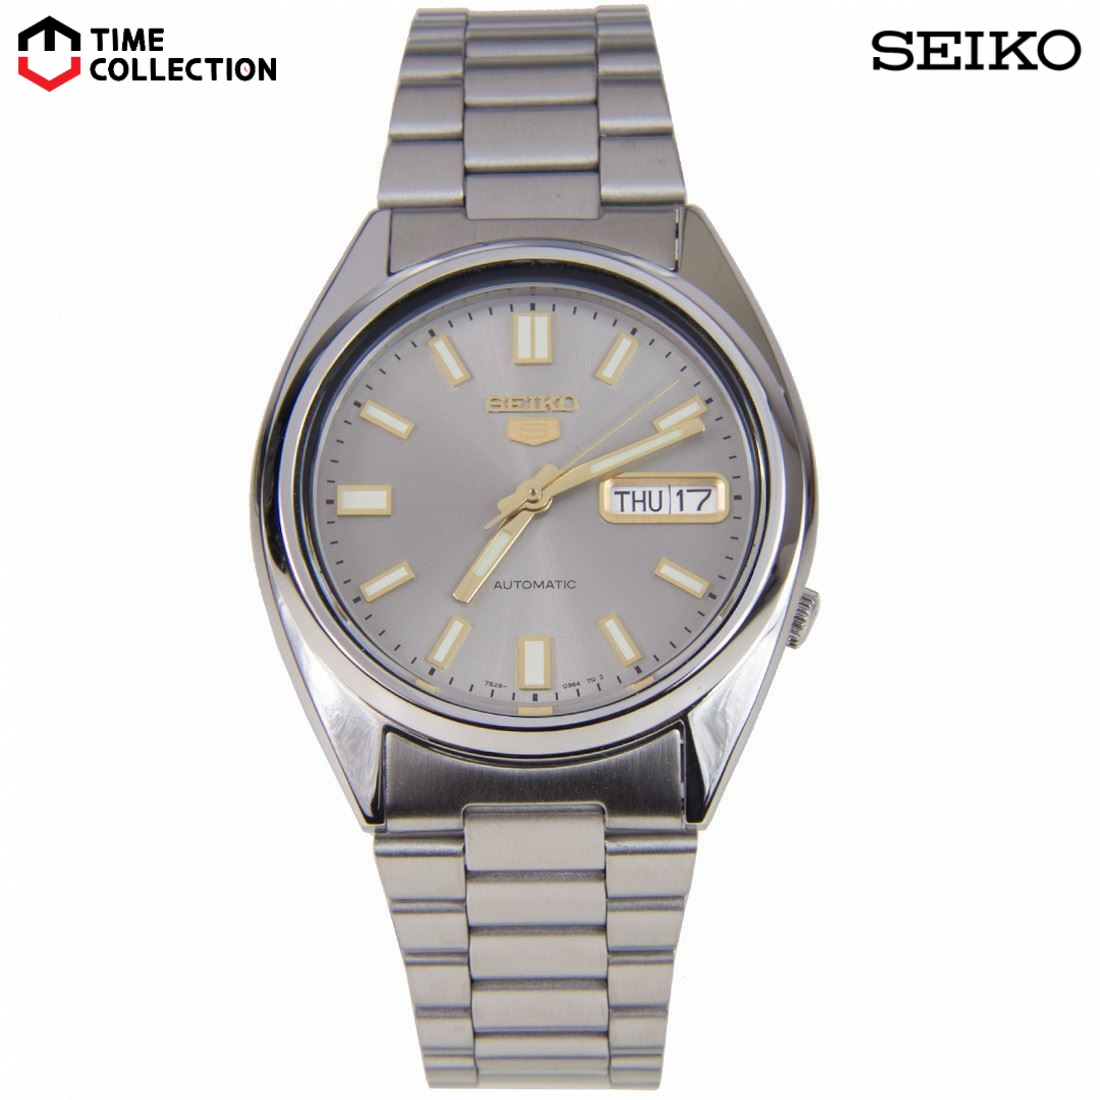 Seiko 5 Sports SNXS75K Automatic Watch for Men's w/ 1 Year Warranty ...